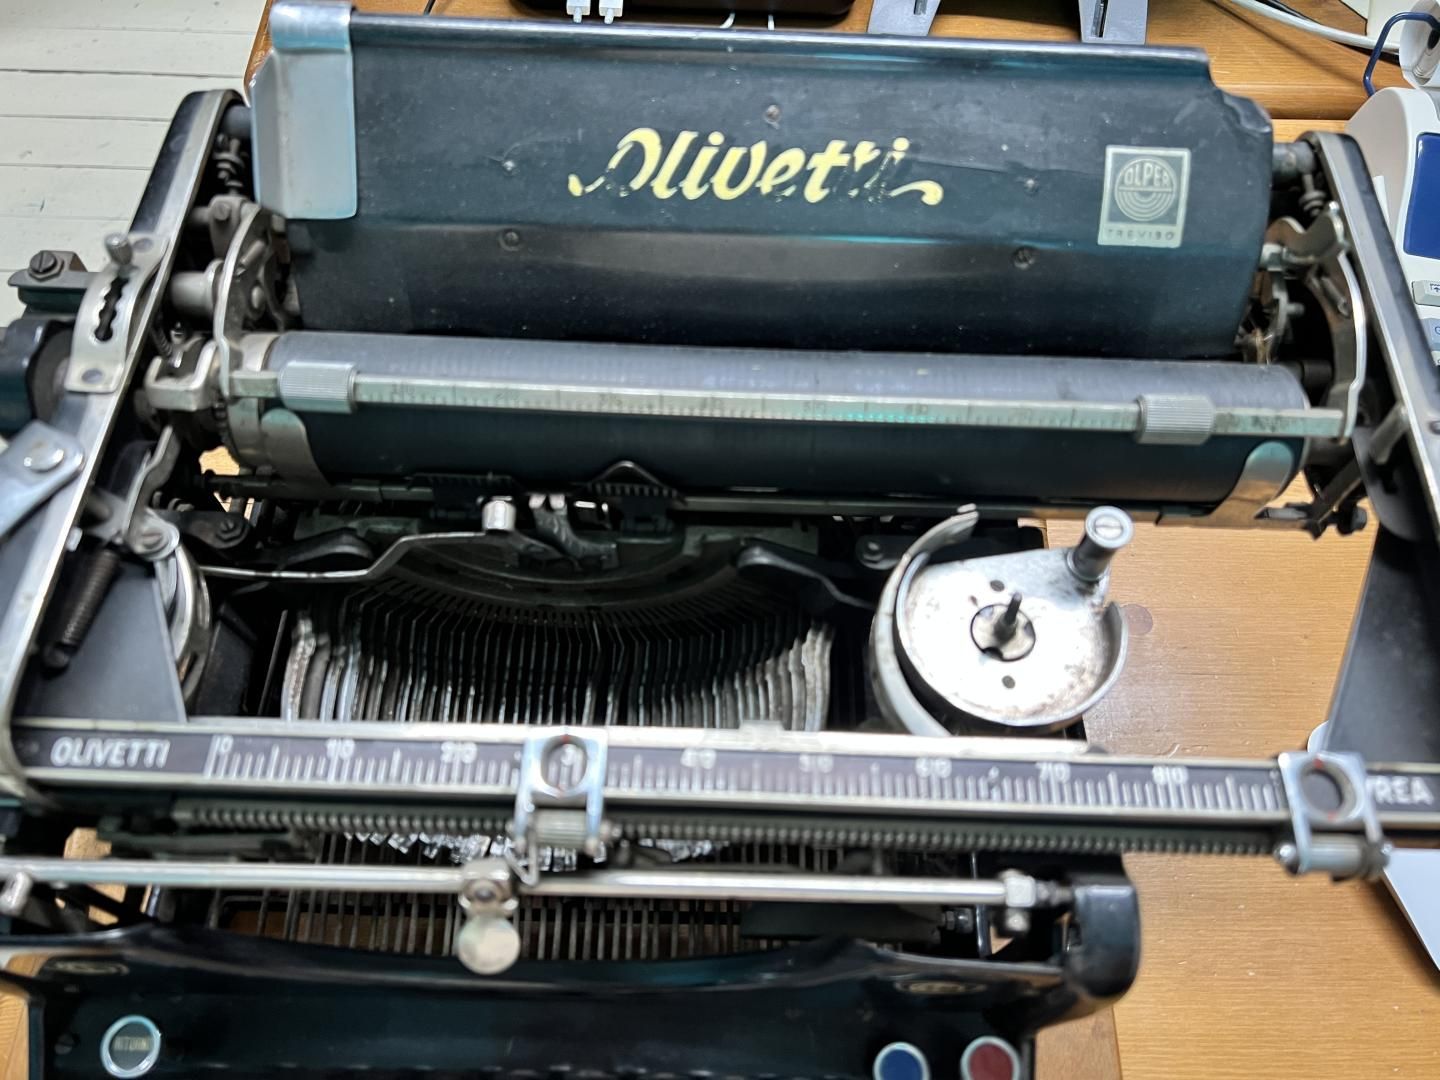 Olivetti M20 typewriter